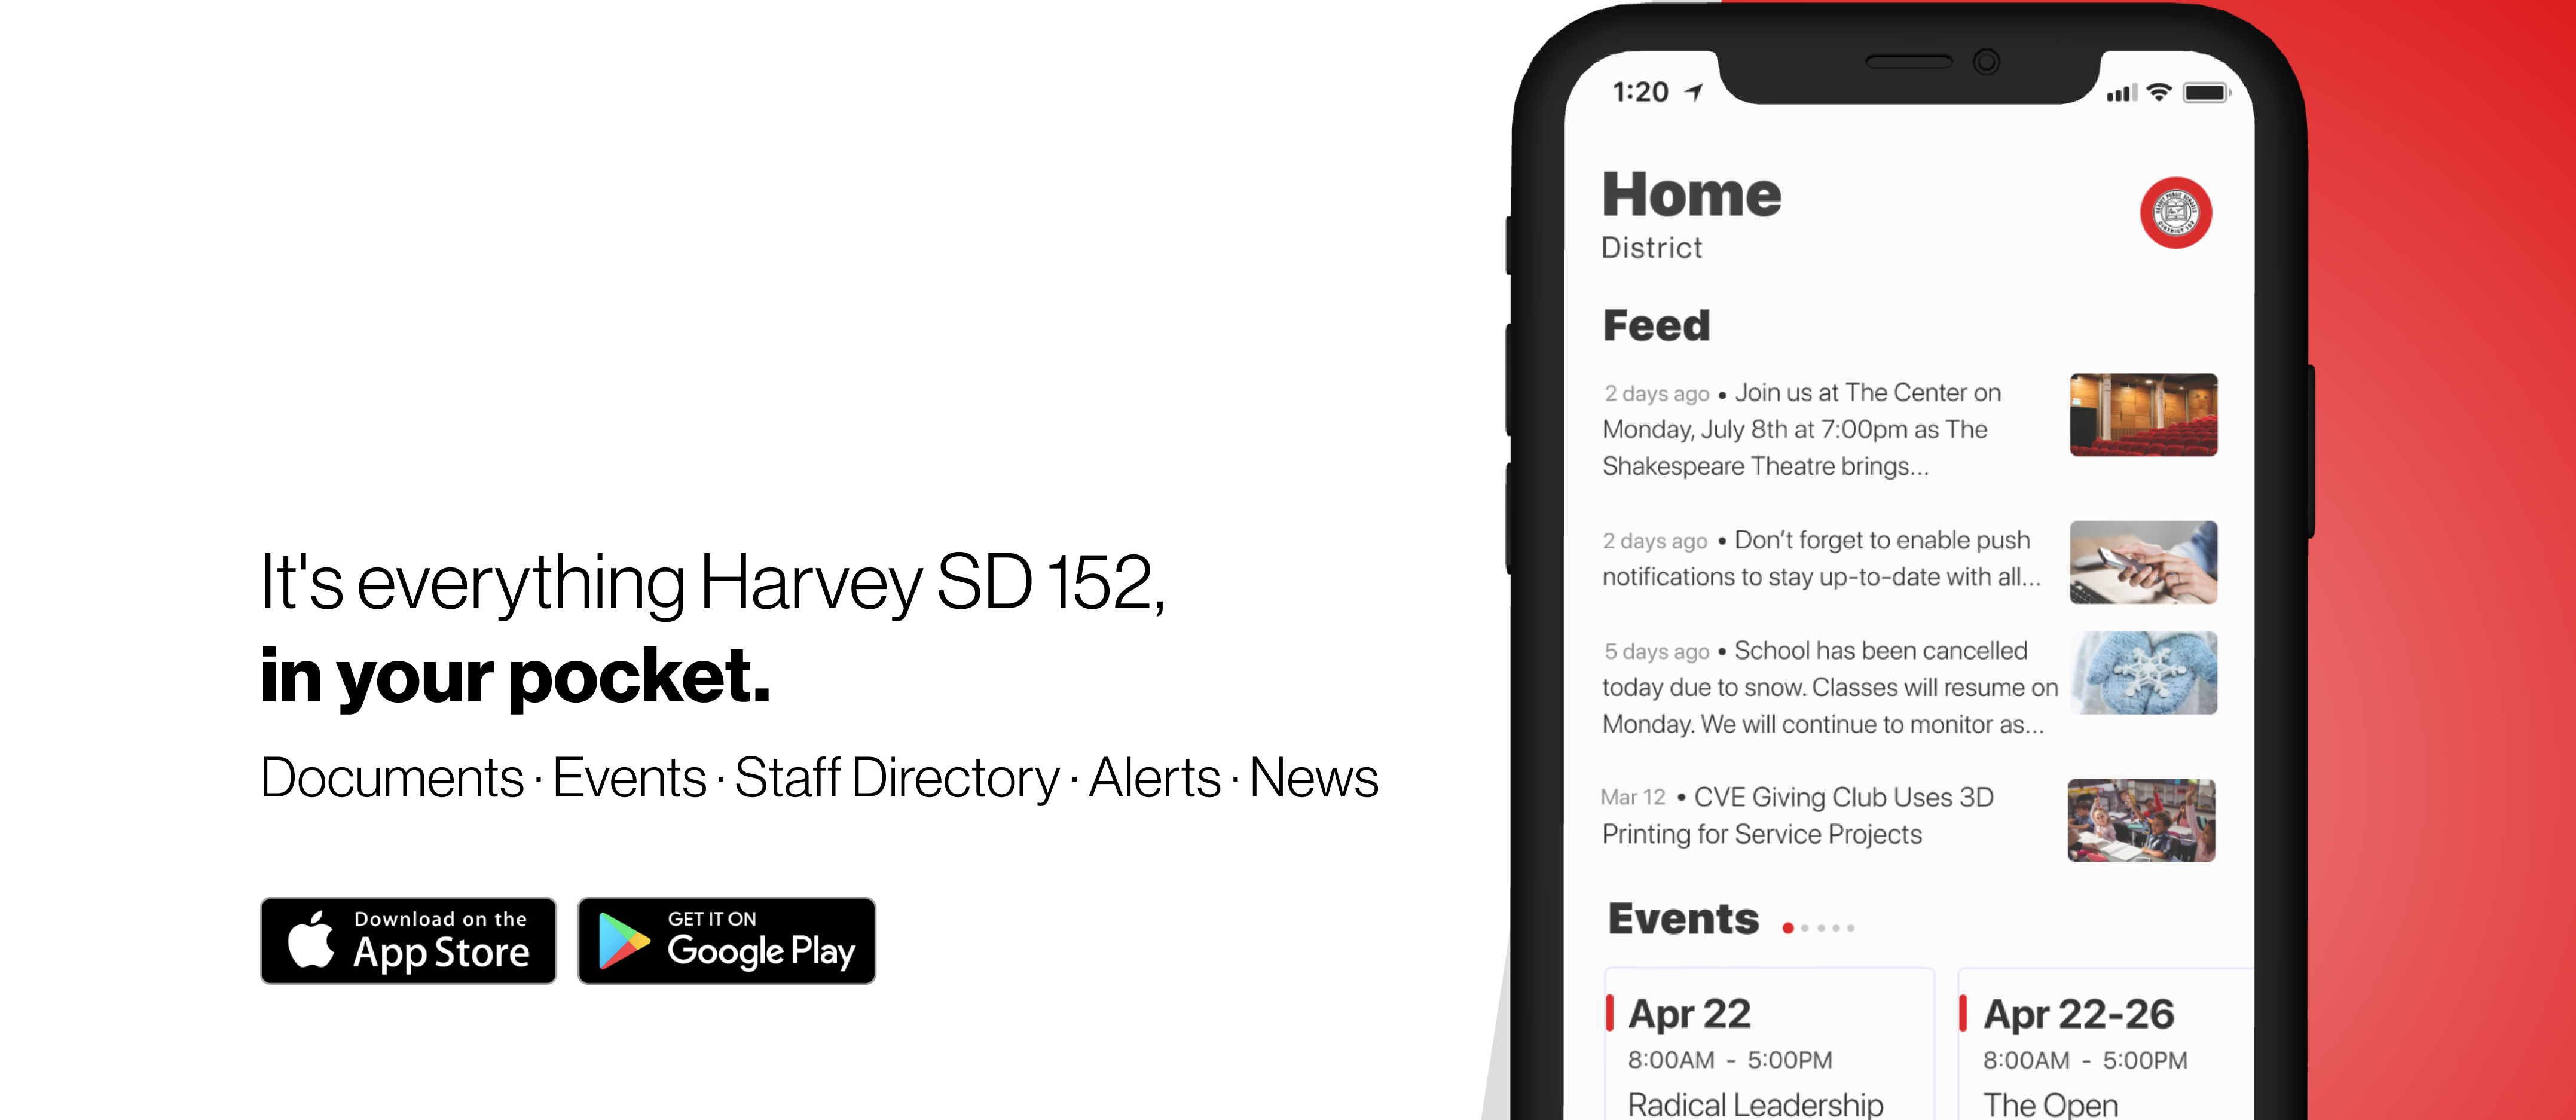 School Mobile App for Harvey 152